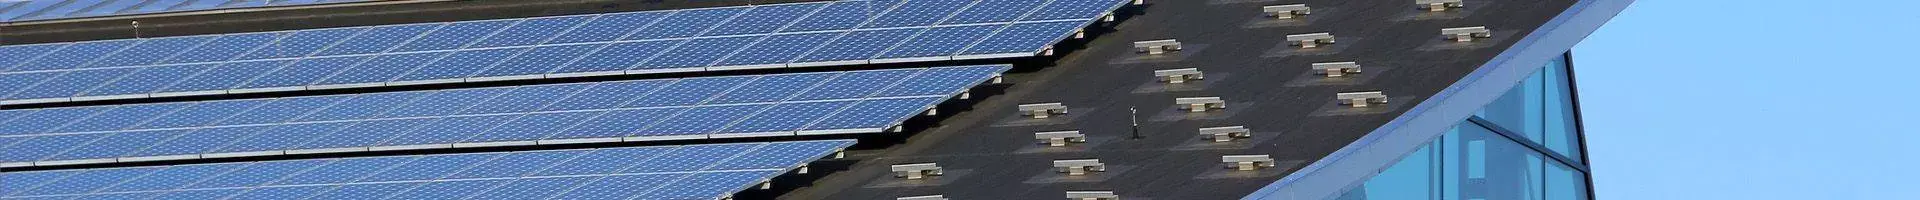 duża ilość paneli słonecznych